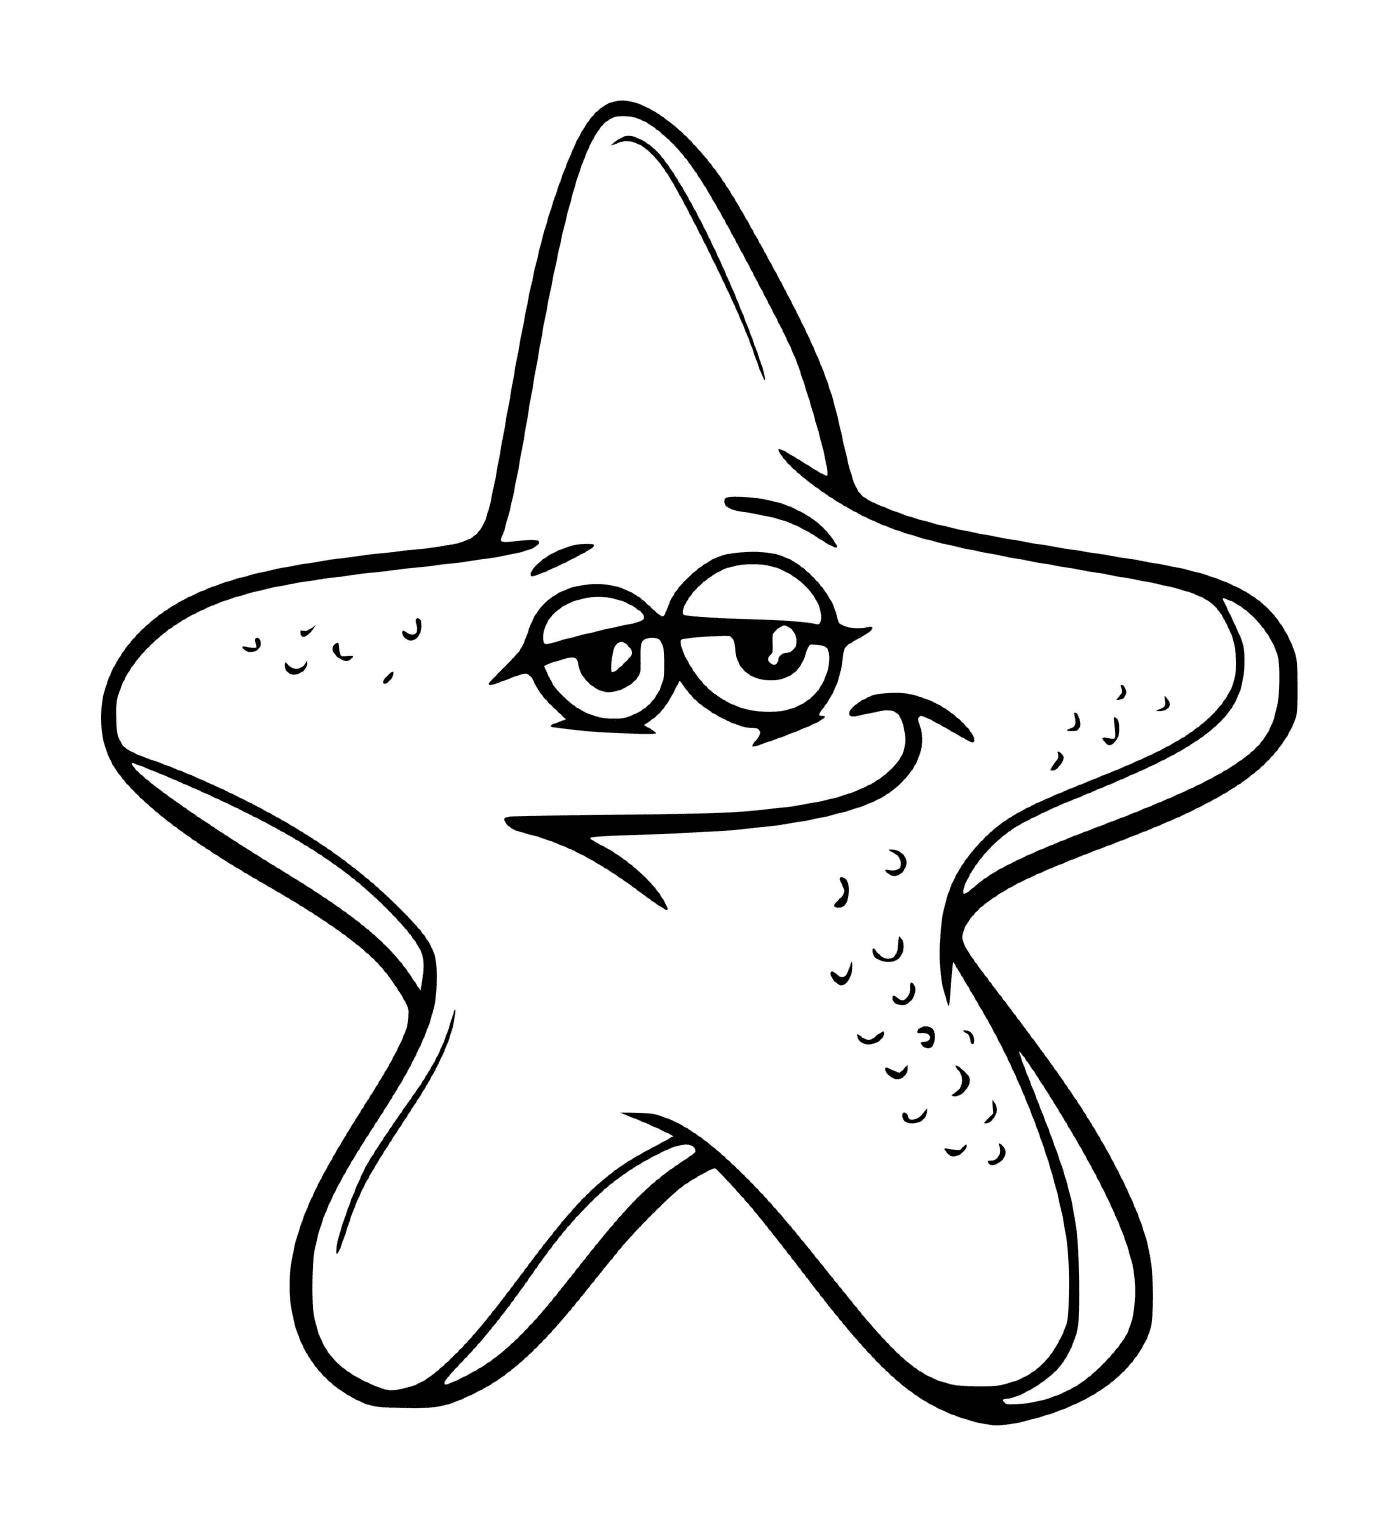  Uma estrela do mar com olhos 